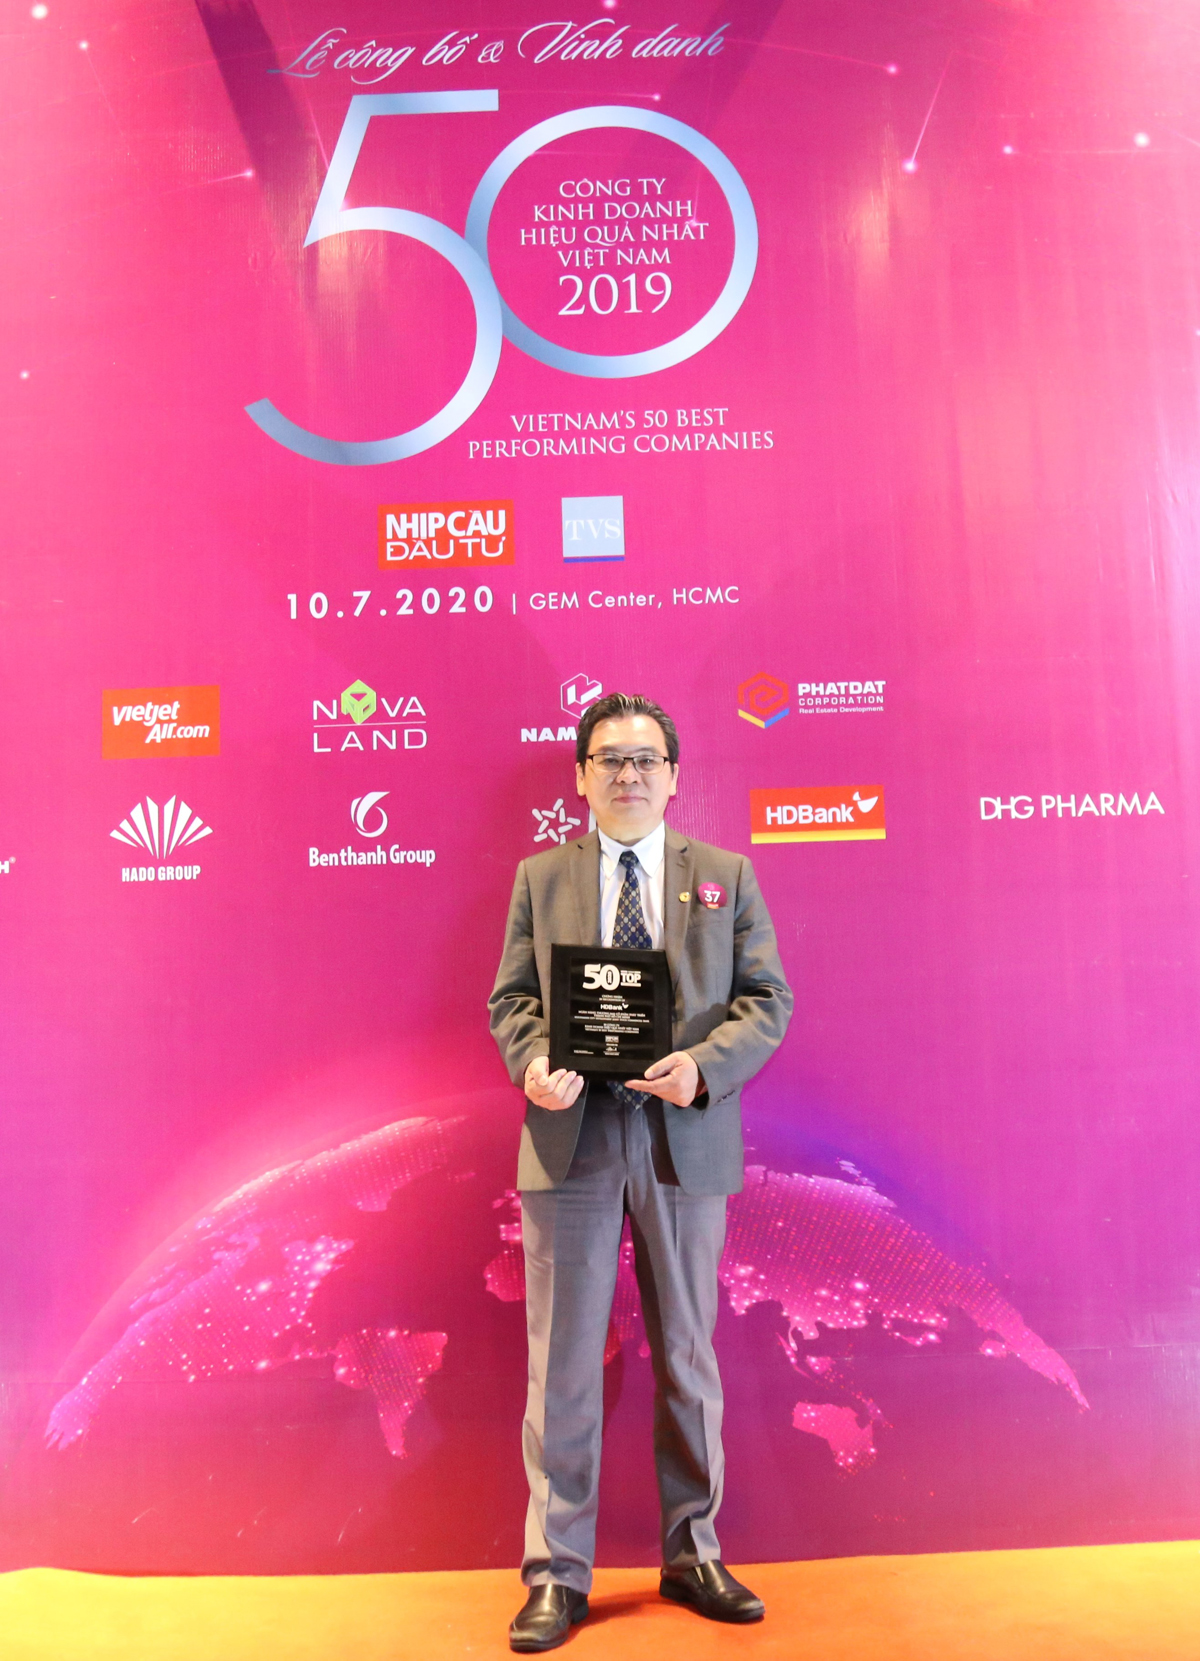 Ông Trần Hoài Phương - Giám đốc Khối KHDN, đại diện HDBank nhận danh hiệu Top những Công ty Kinh doanh Hiệu quả nhất Việt Nam